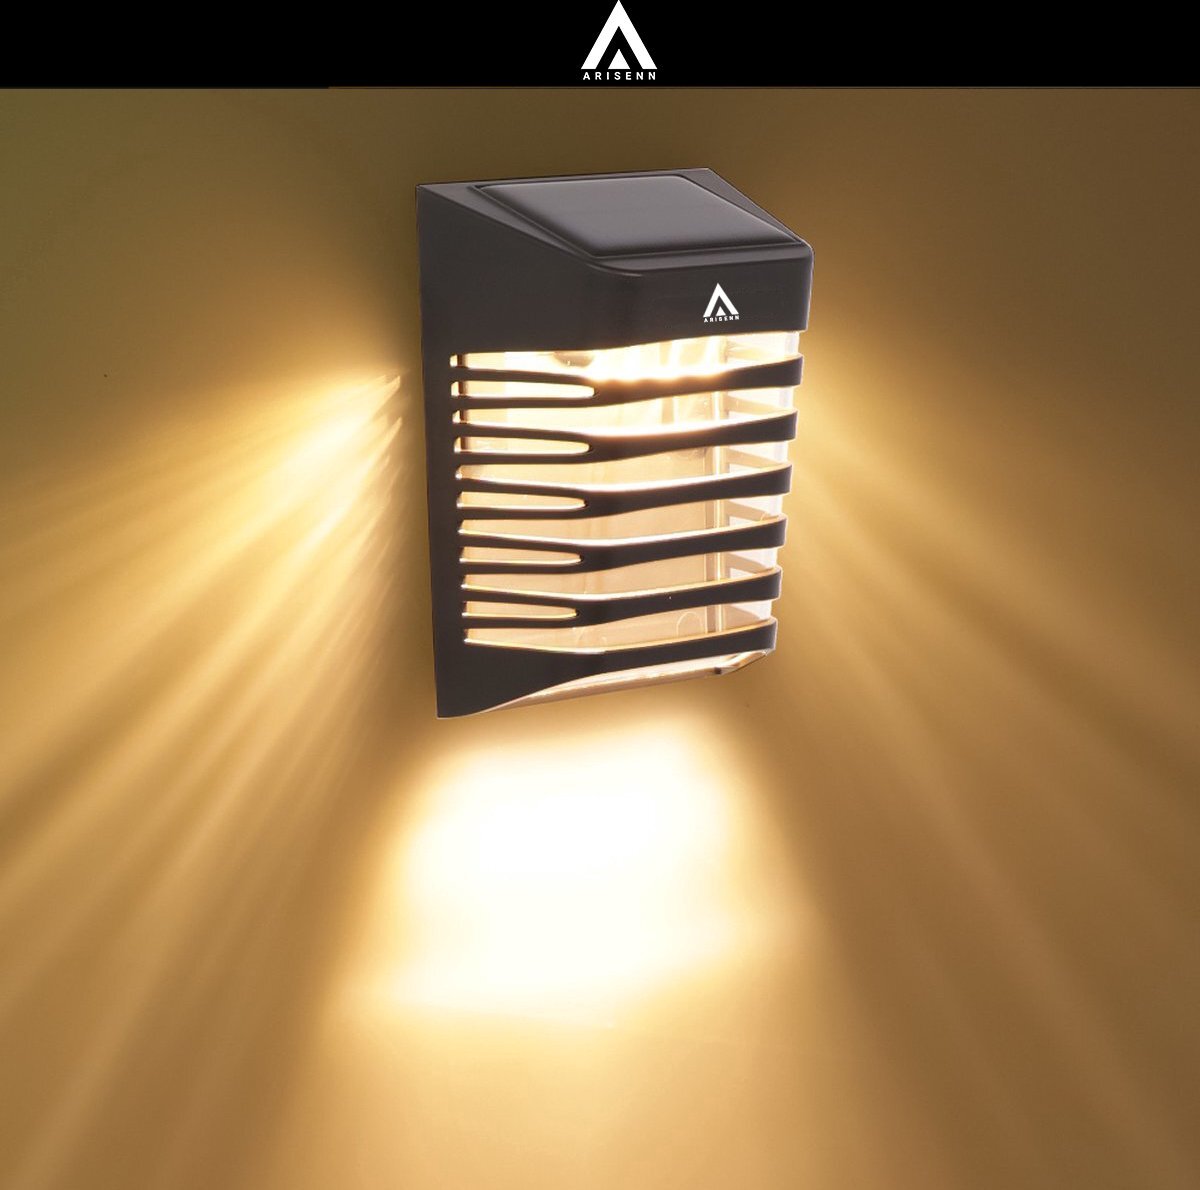 ARISENN Arisenn® Crystal Solar Buitenlamp - IP65 Waterdicht - Prachtige Solar Technologie Monokristal Zonnepaneel wandlamp - 3000K Warm Wit (sfeervol) - Tuinverlichting op Zonne-energie | schutting wand licht